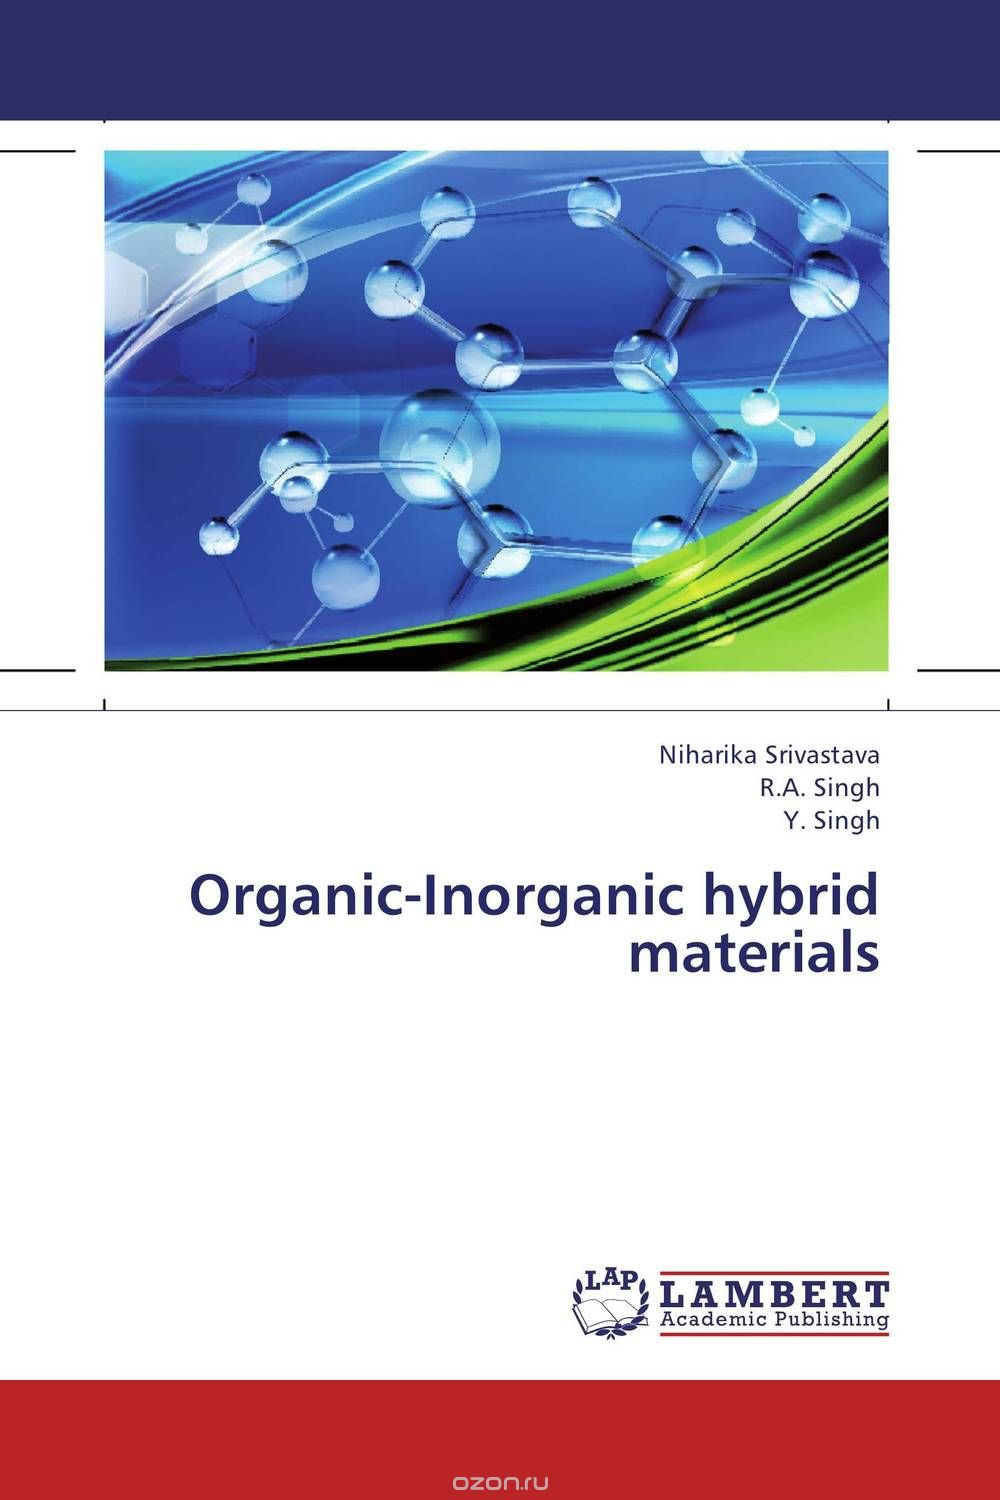 Скачать книгу "Organic-Inorganic hybrid materials"